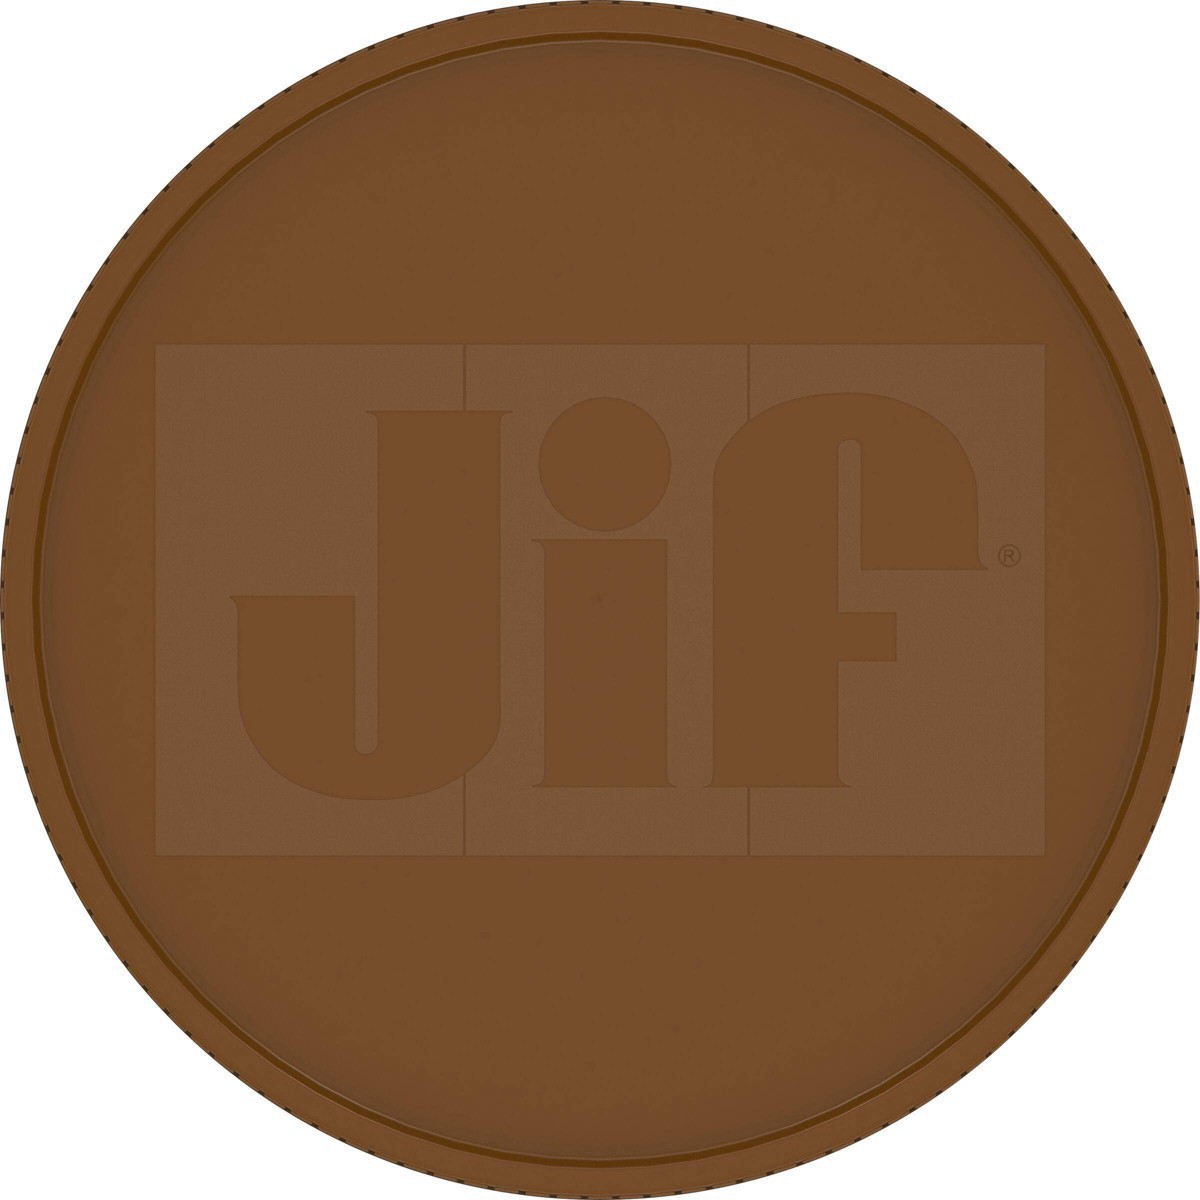 slide 7 of 41, Jif Natural Crunchy Peanut Butter, 16 oz